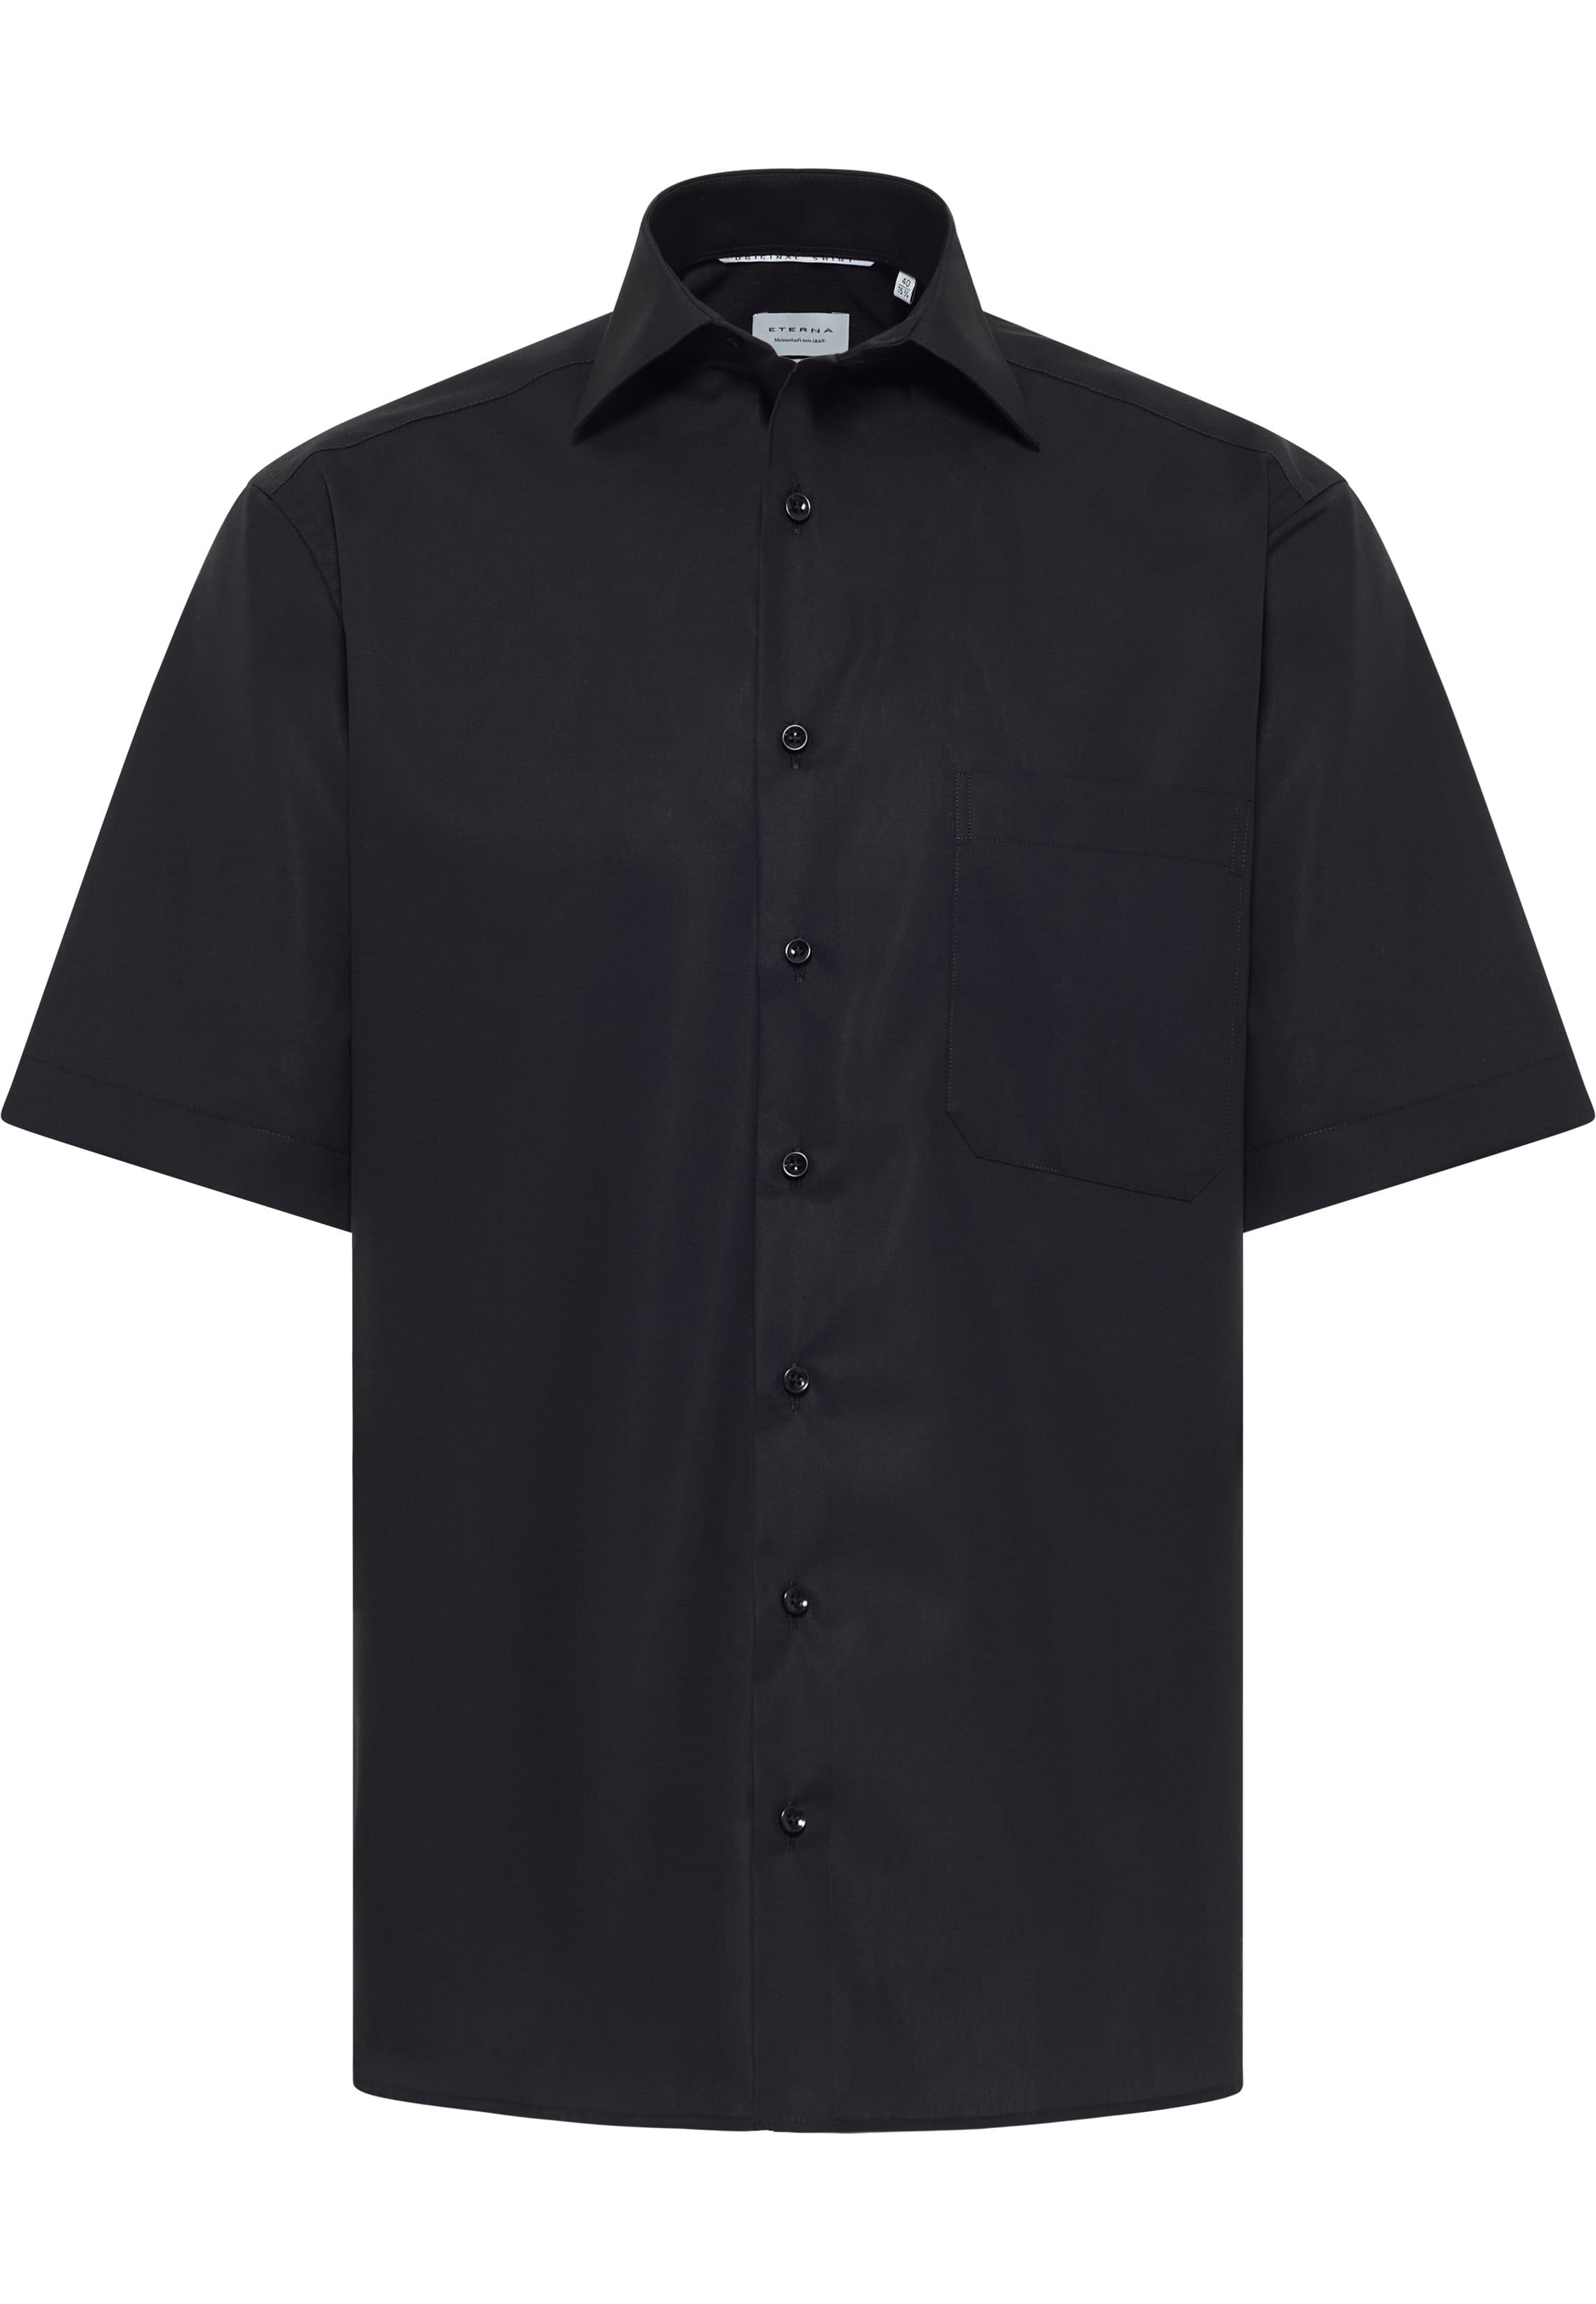 COMFORT FIT Original Shirt in black plain